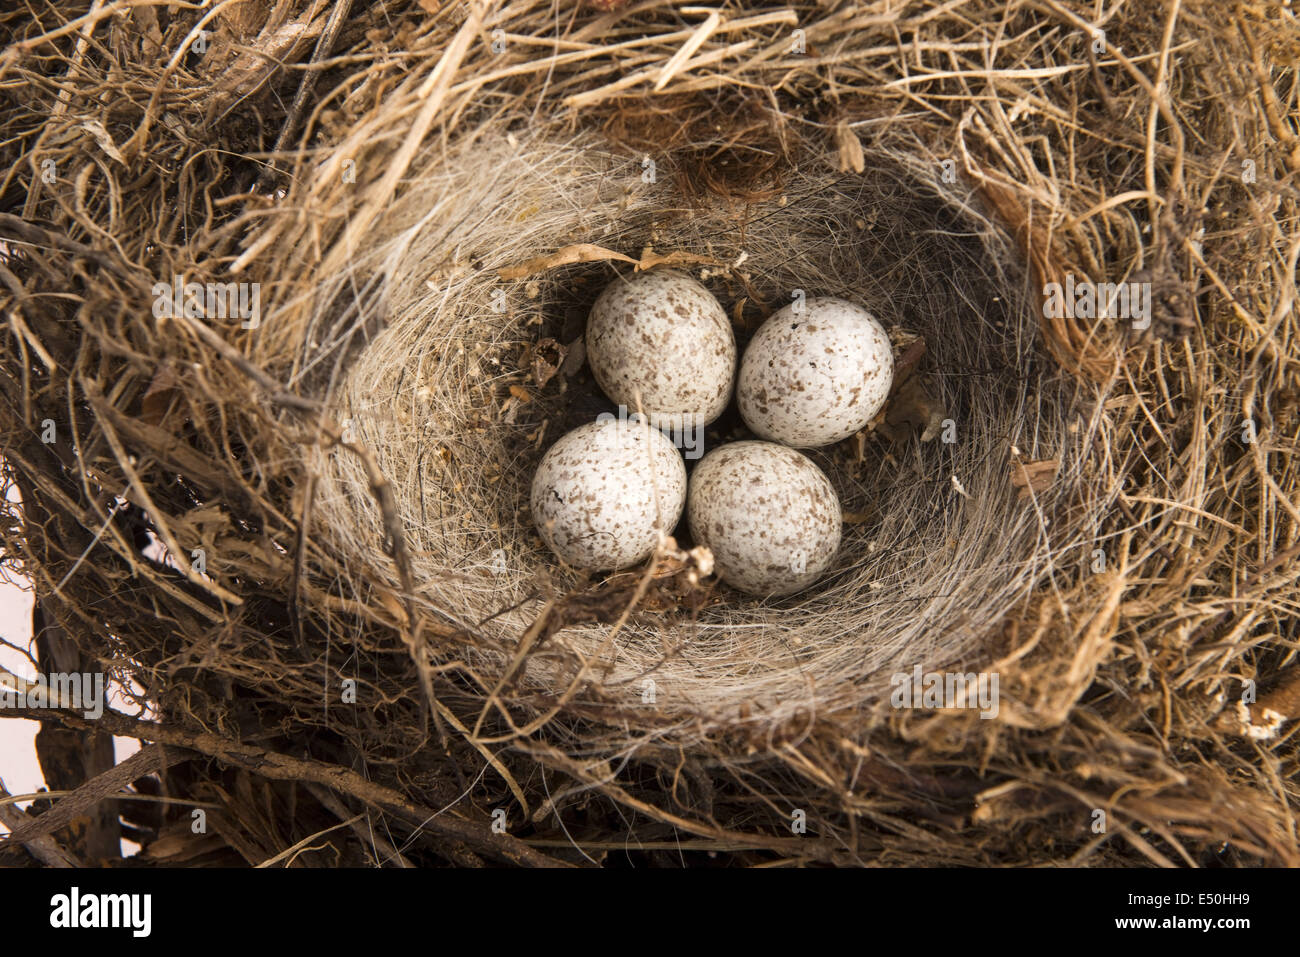 Dettaglio delle uova di uccello nel nido Foto Stock